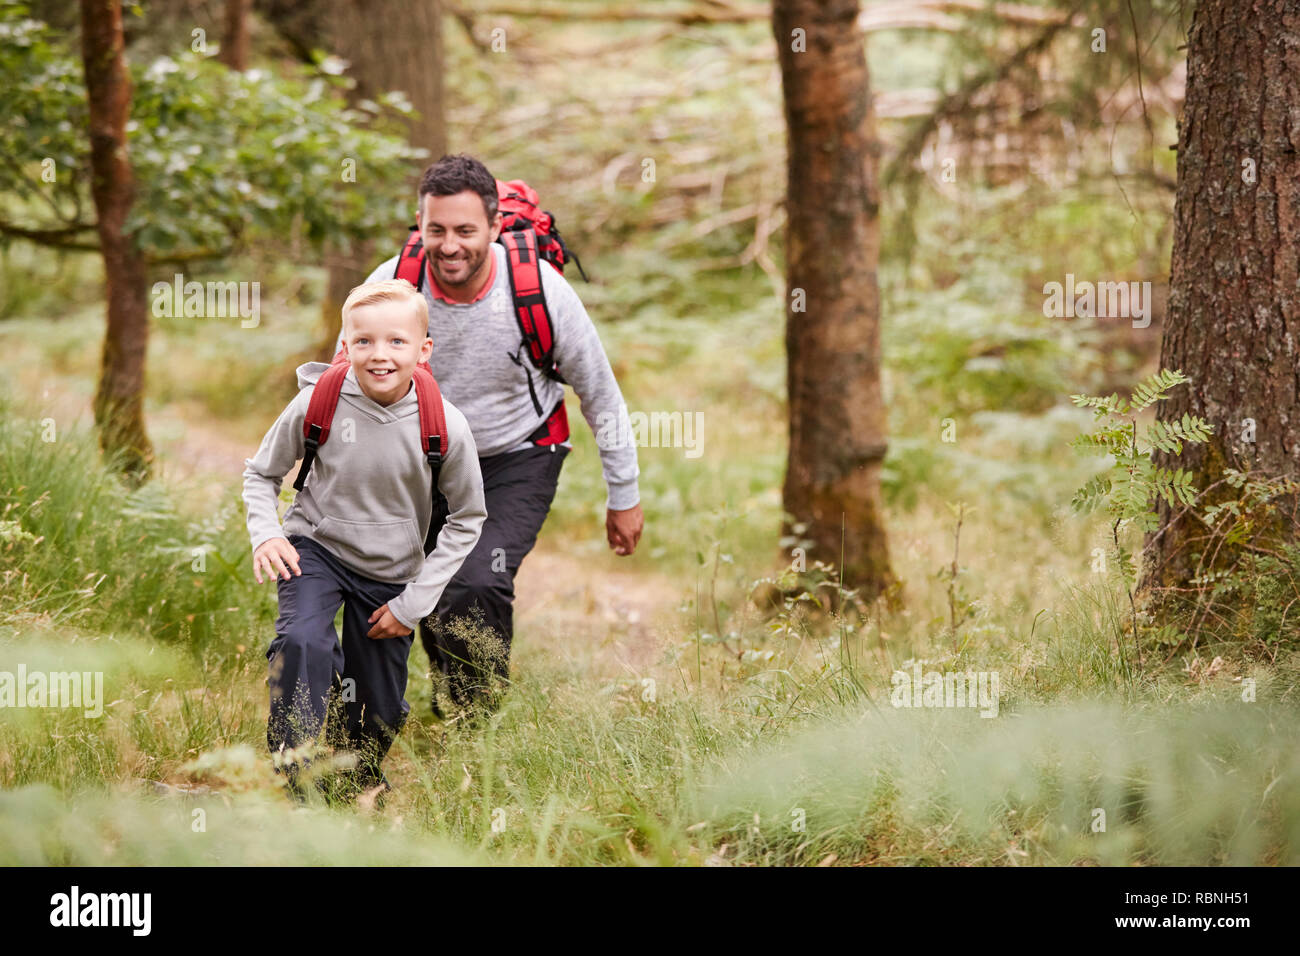 Un garçon et son père à marcher ensemble sur un sentier entre les arbres d'une forêt, à la fois smiling, portrait Banque D'Images